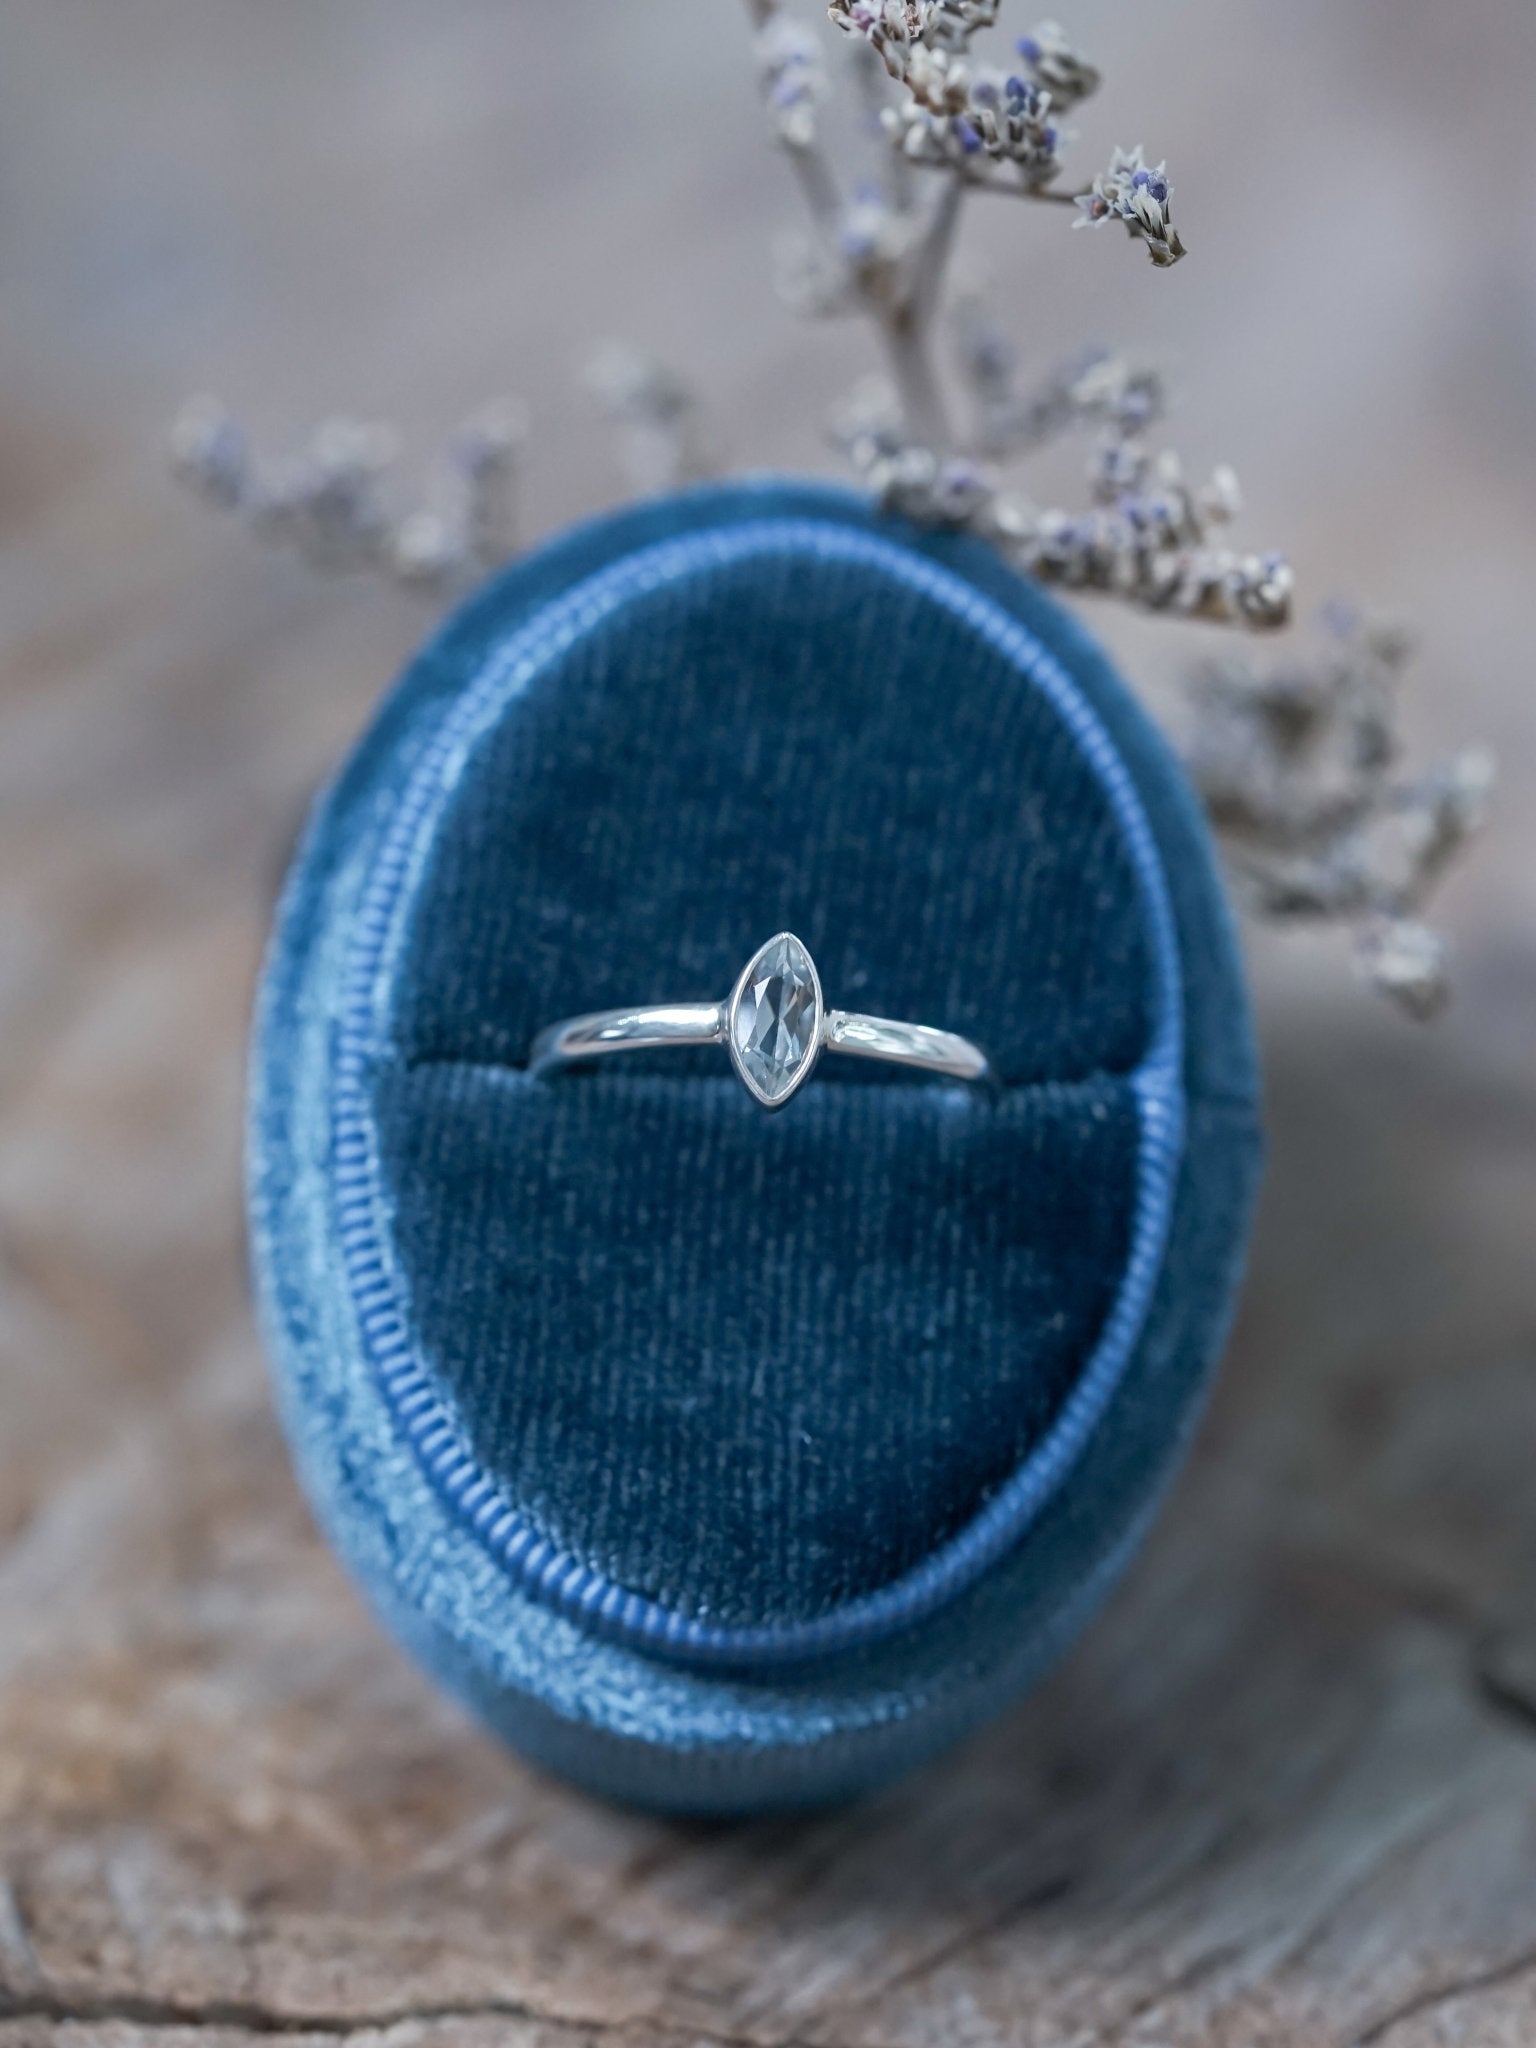 Marquise Aquamarine Ring